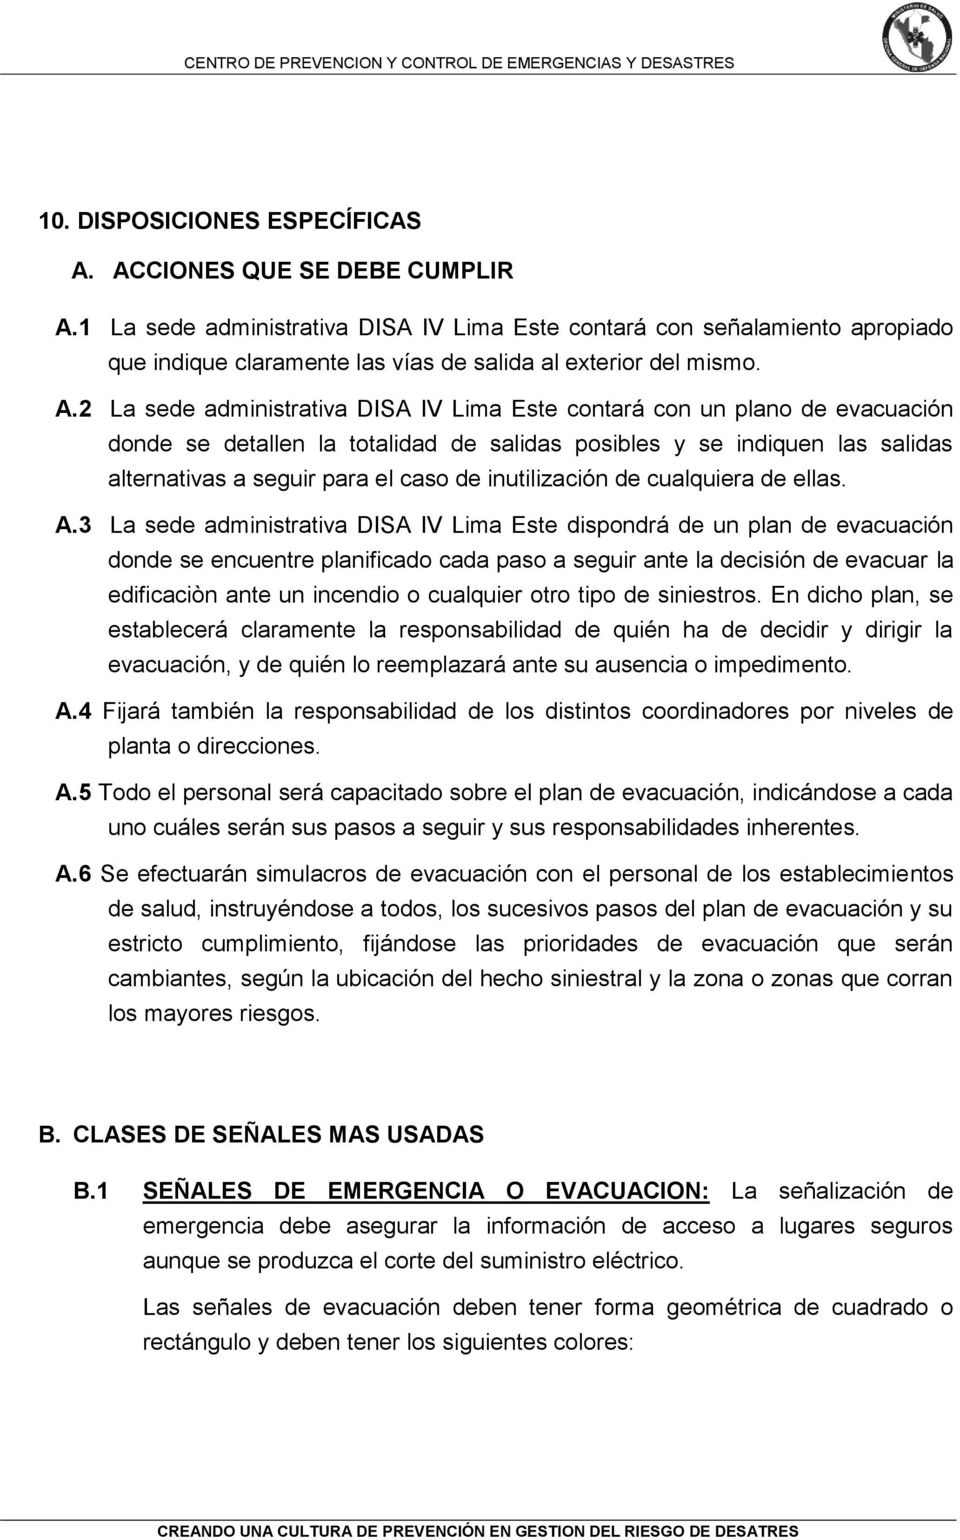 2 La sede administrativa DISA IV Lima Este contará con un plano de evacuación donde se detallen la totalidad de salidas posibles y se indiquen las salidas alternativas a seguir para el caso de